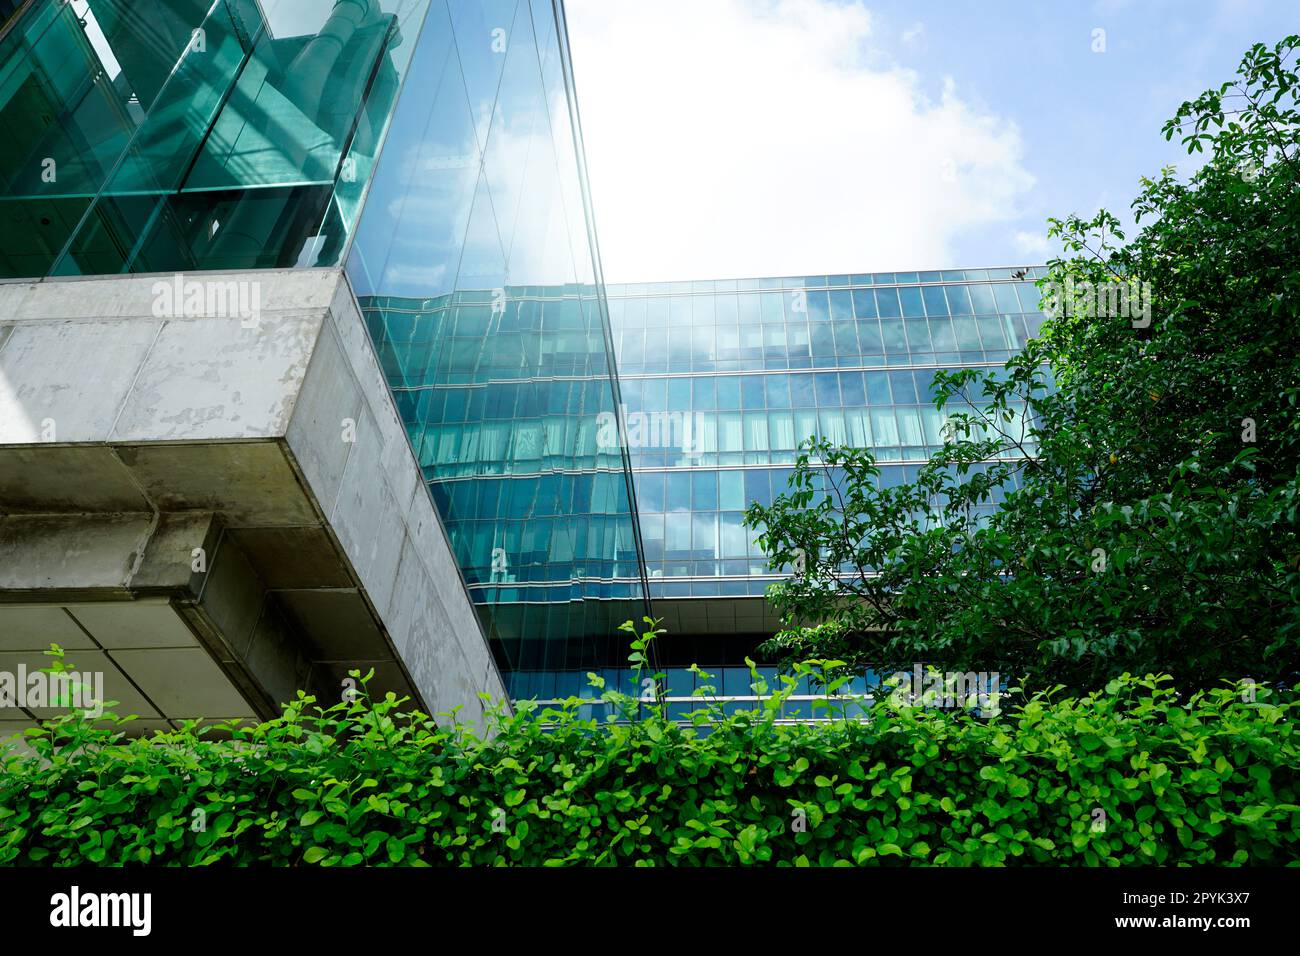 Bâtiment écologique durable. Bâtiment écologique dans la ville moderne. Immeuble de bureaux en verre durable avec arbre pour réduire le dioxyde de carbone. Bureau avec environnement vert. Bâtiment d'entreprise réduire le CO2. Banque D'Images